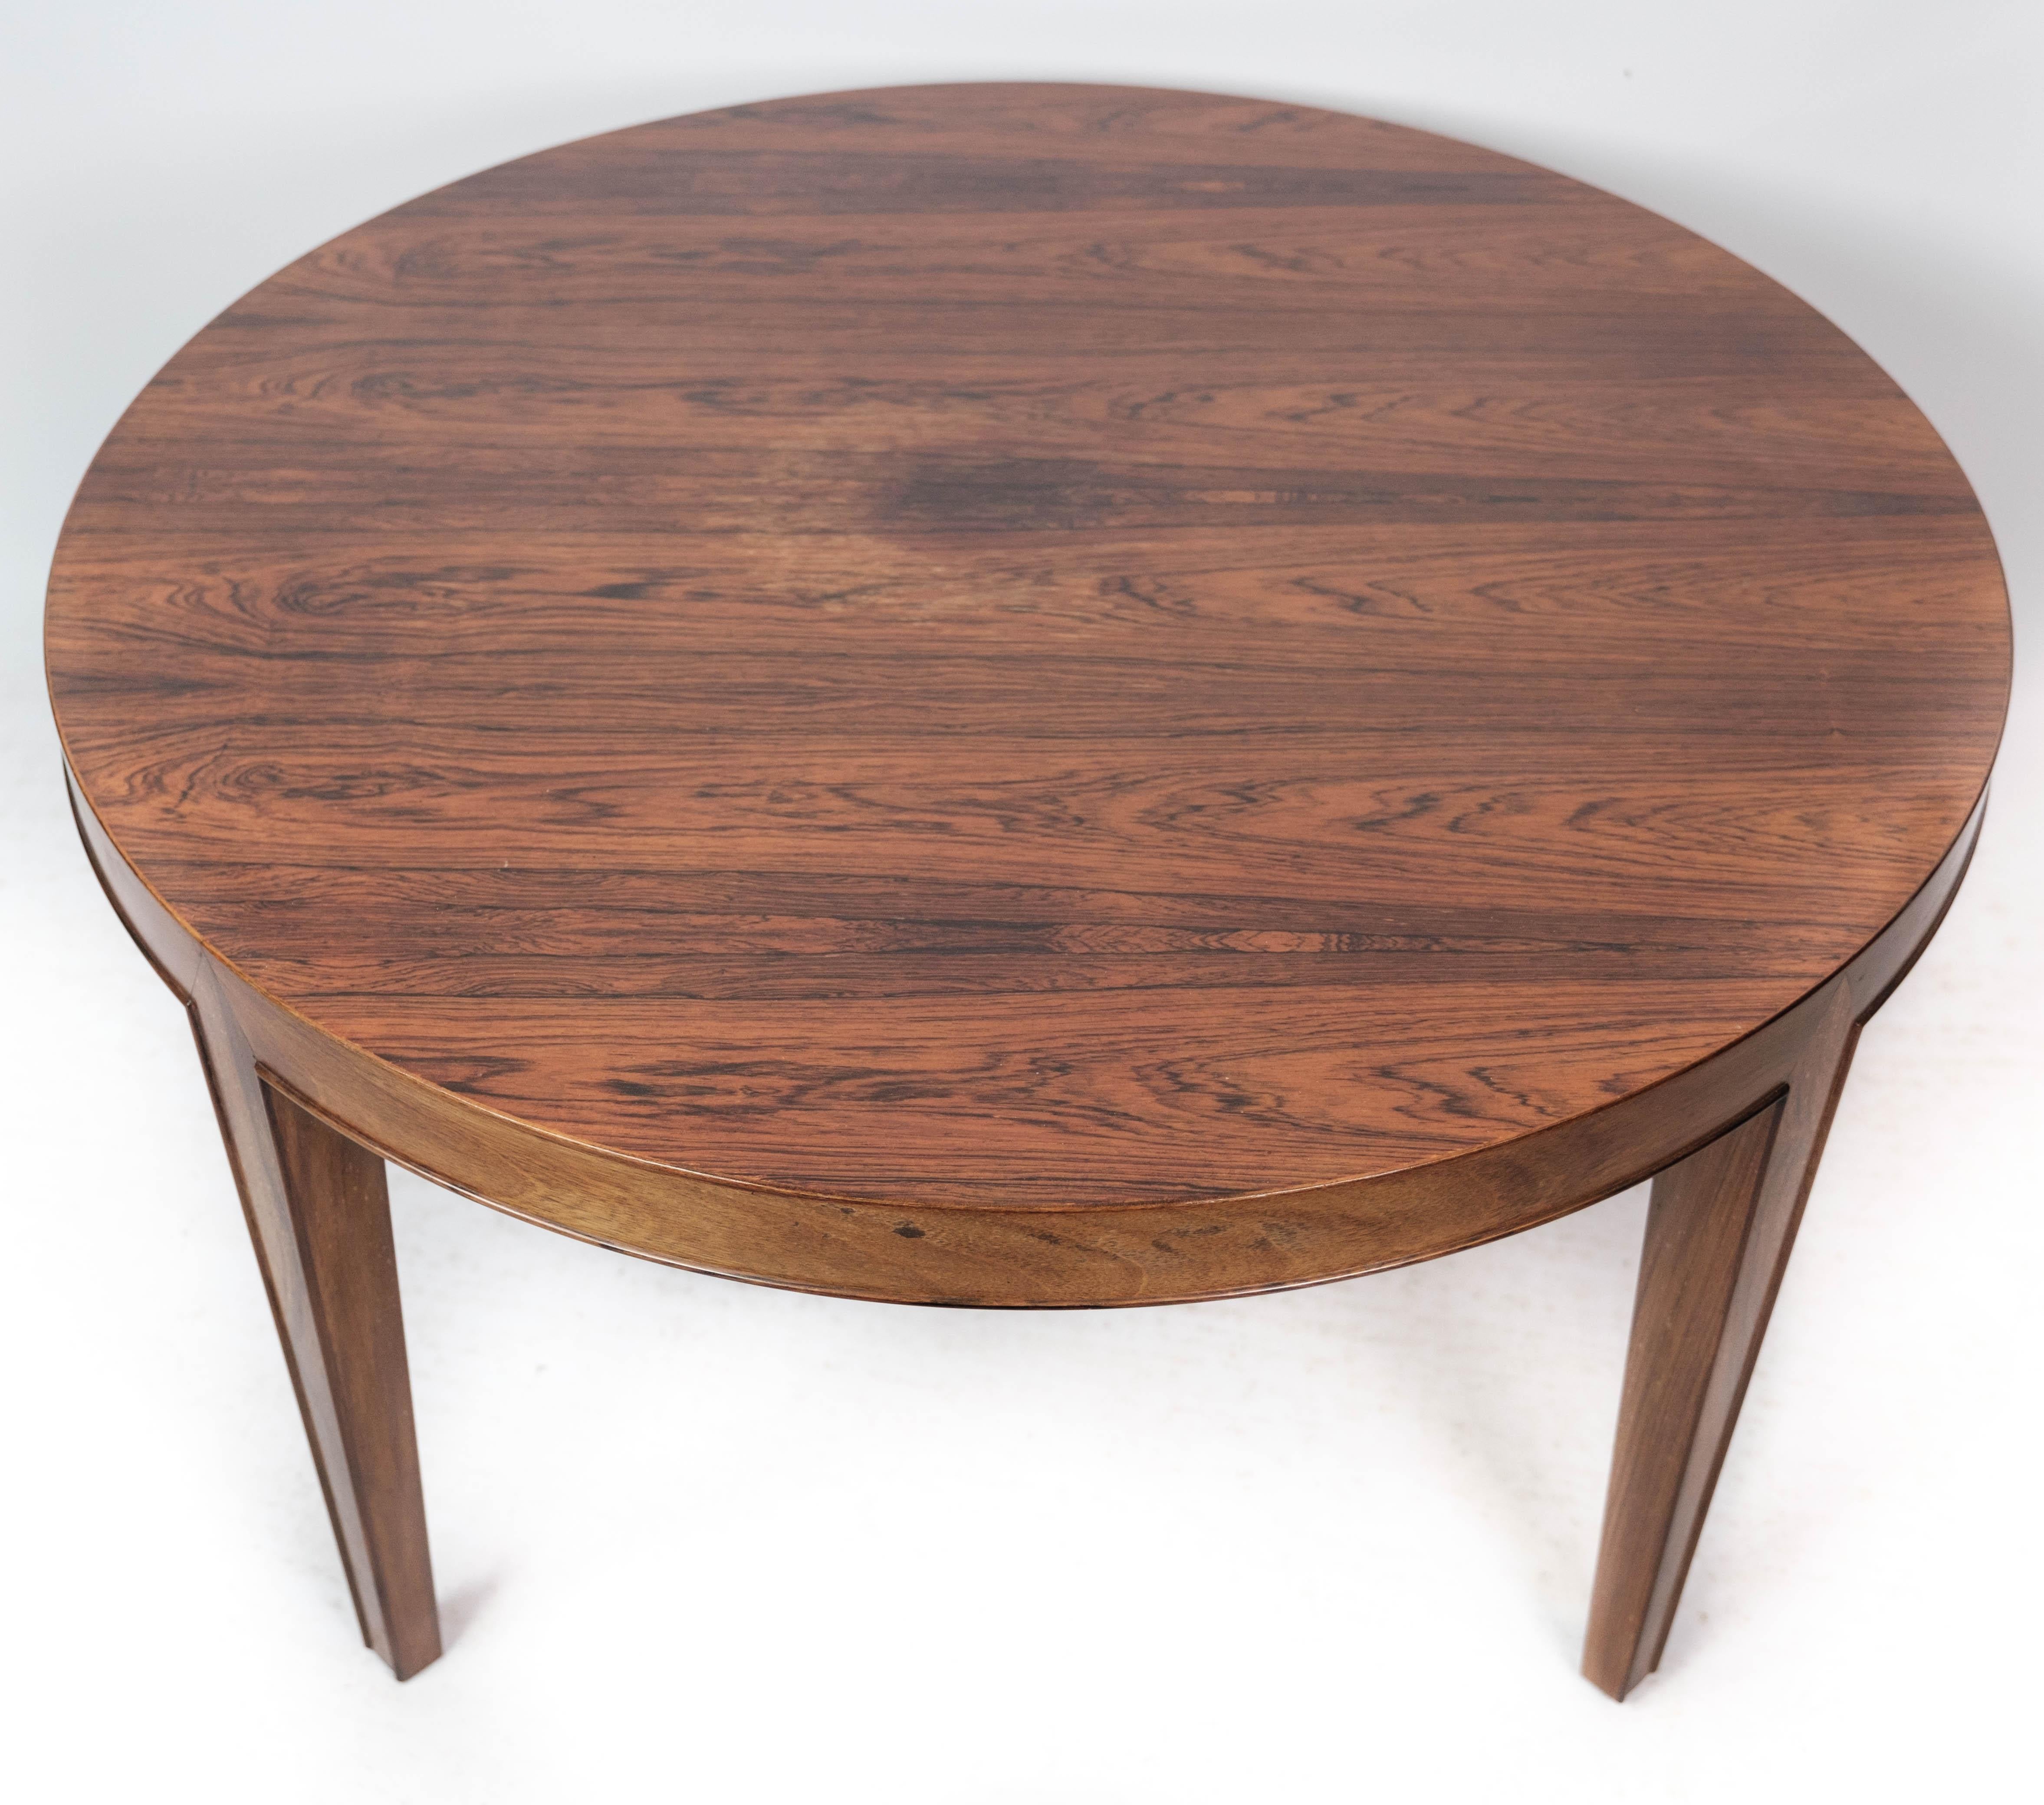 La table basse en bois de rose, conçue par Severin Hansen et fabriquée par Haslev Furniture dans les années 1960, est un exemple étonnant du design moderniste danois.

Le bois de rose, révéré pour ses teintes riches et ses veinures distinctives,